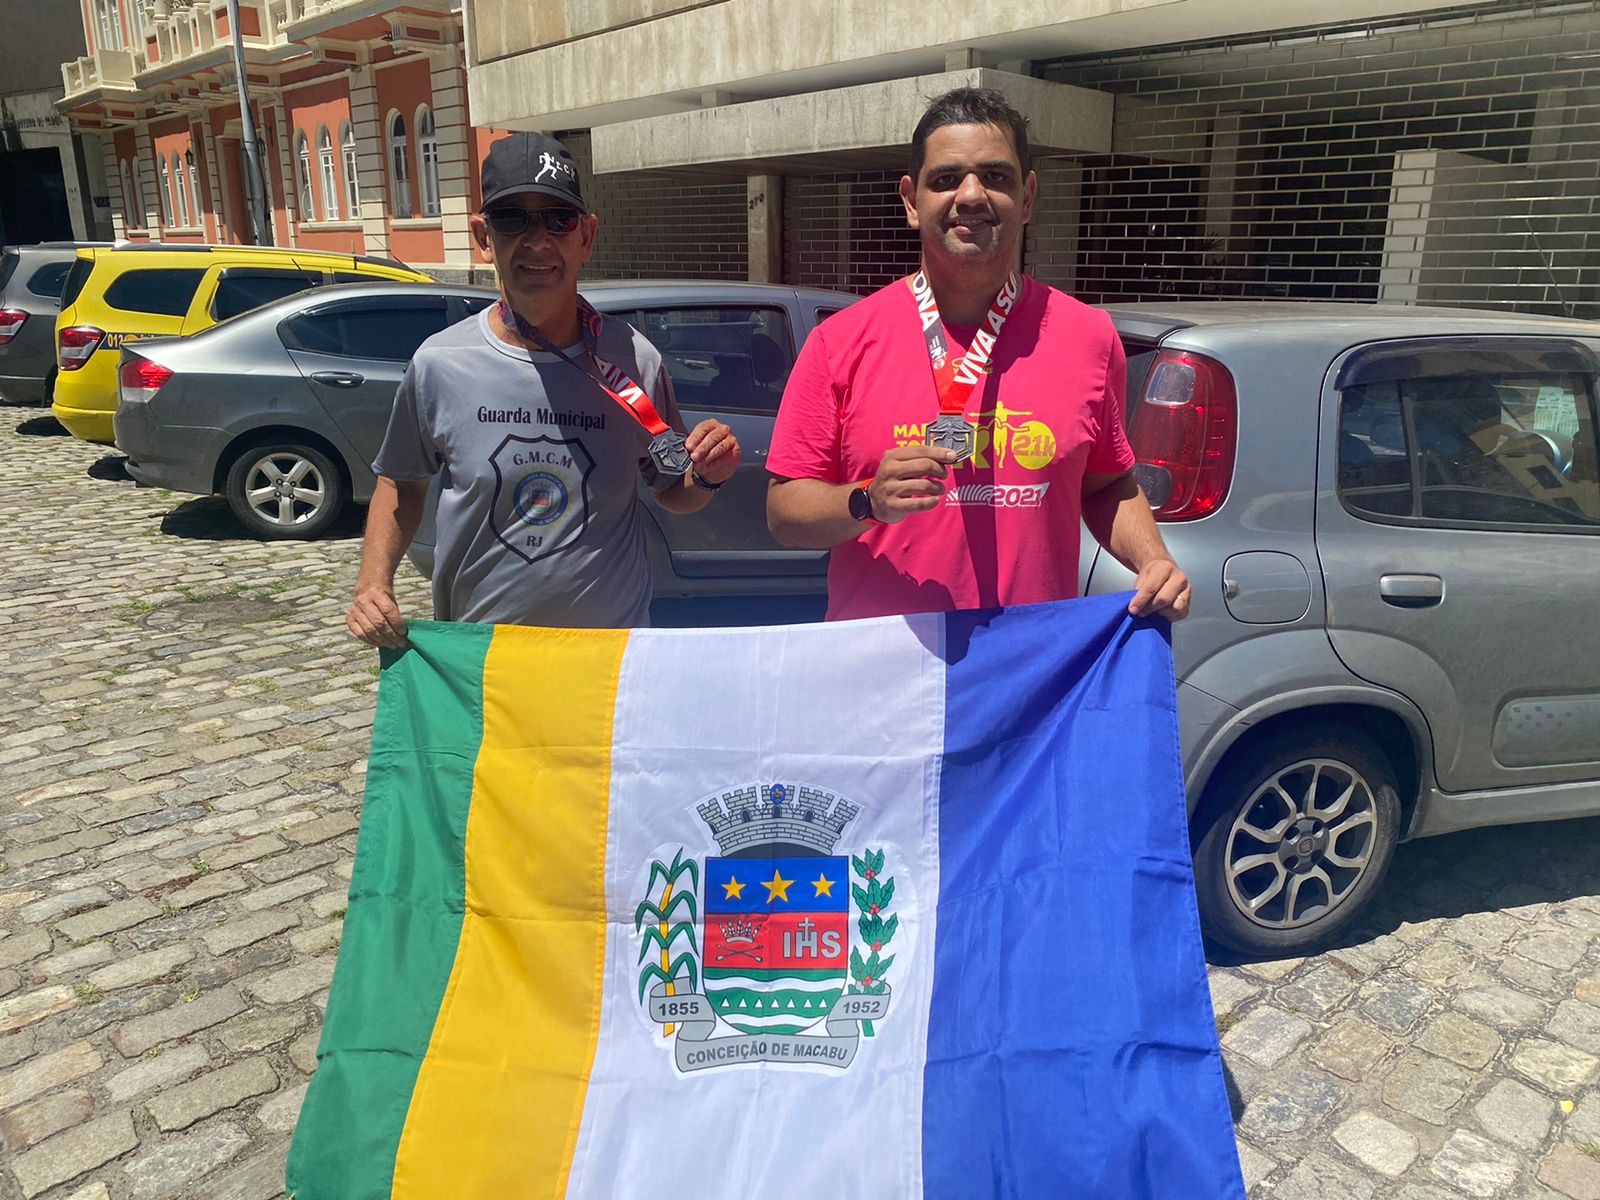 Patrick Carvalho e amigo participam da Meia Maratona do Rio neste domingo (14)